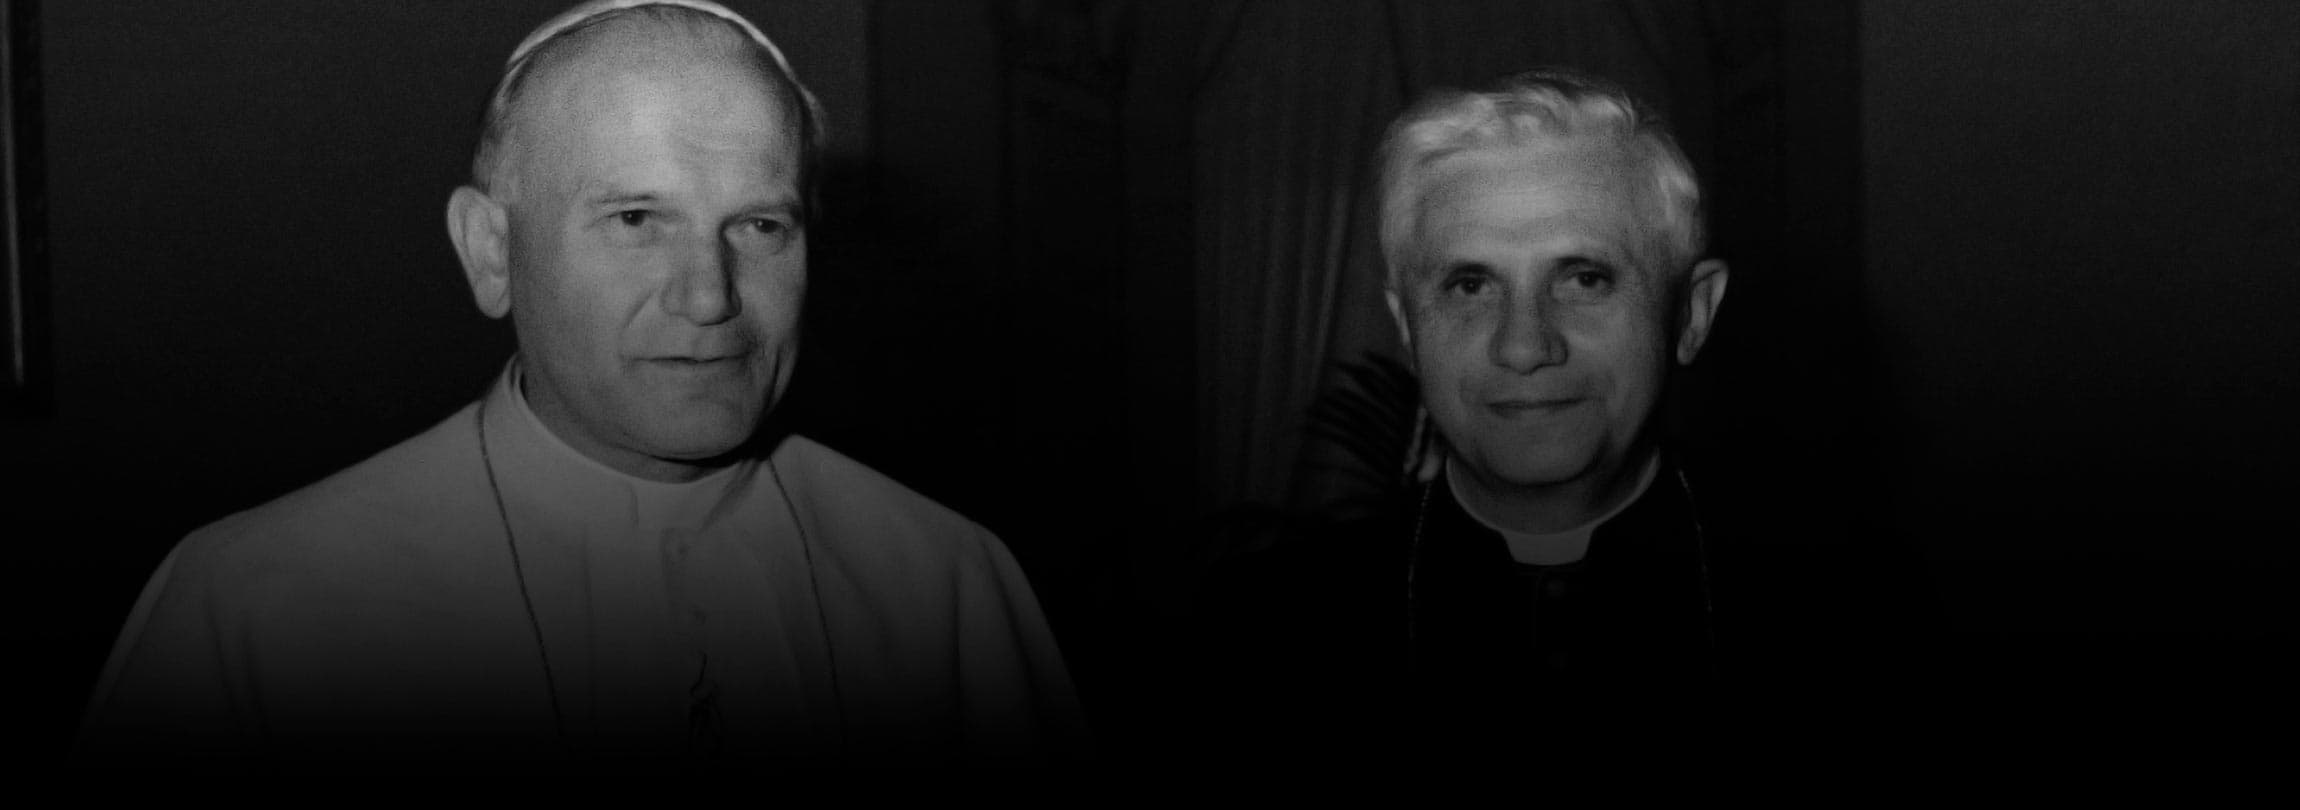 Quando Ratzinger se uniu aos protestantes para defender a fé